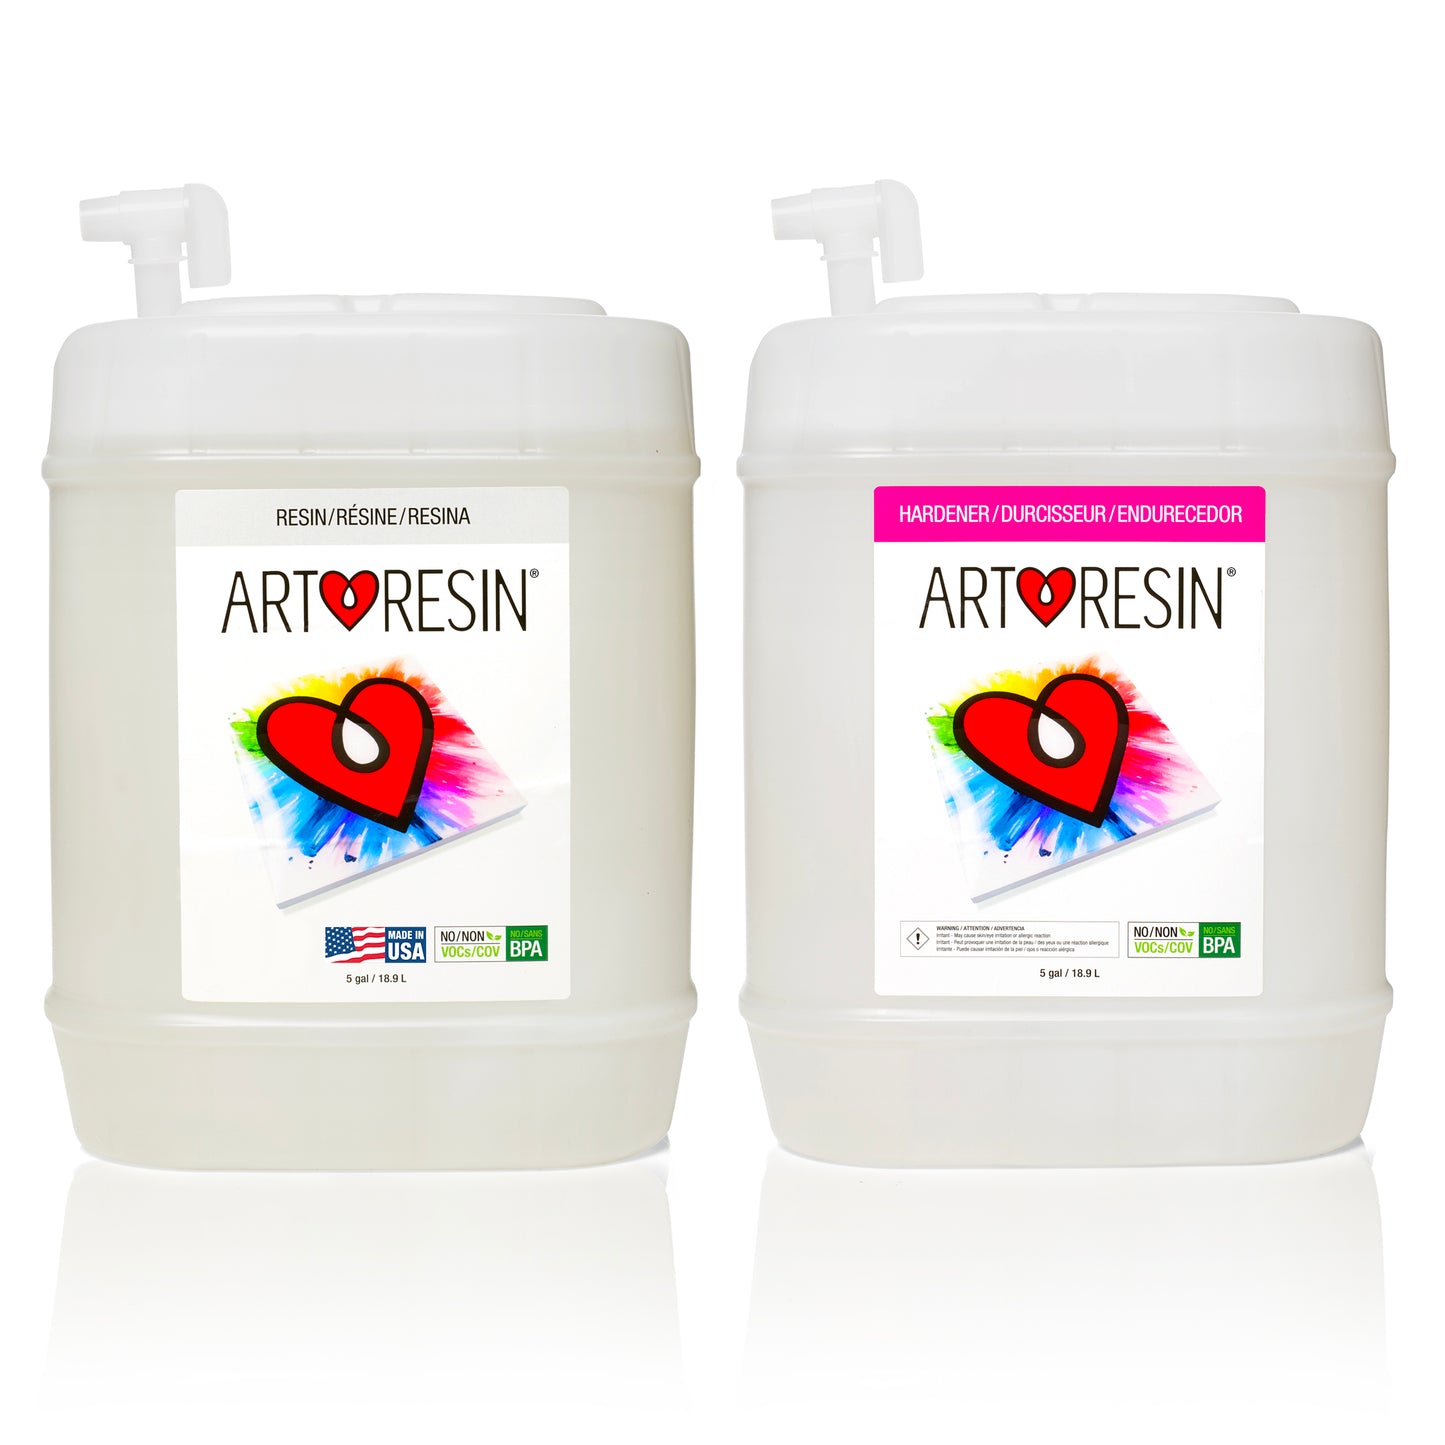 ArtResin® Epoxy Resin in mscat – Mulk Art Store